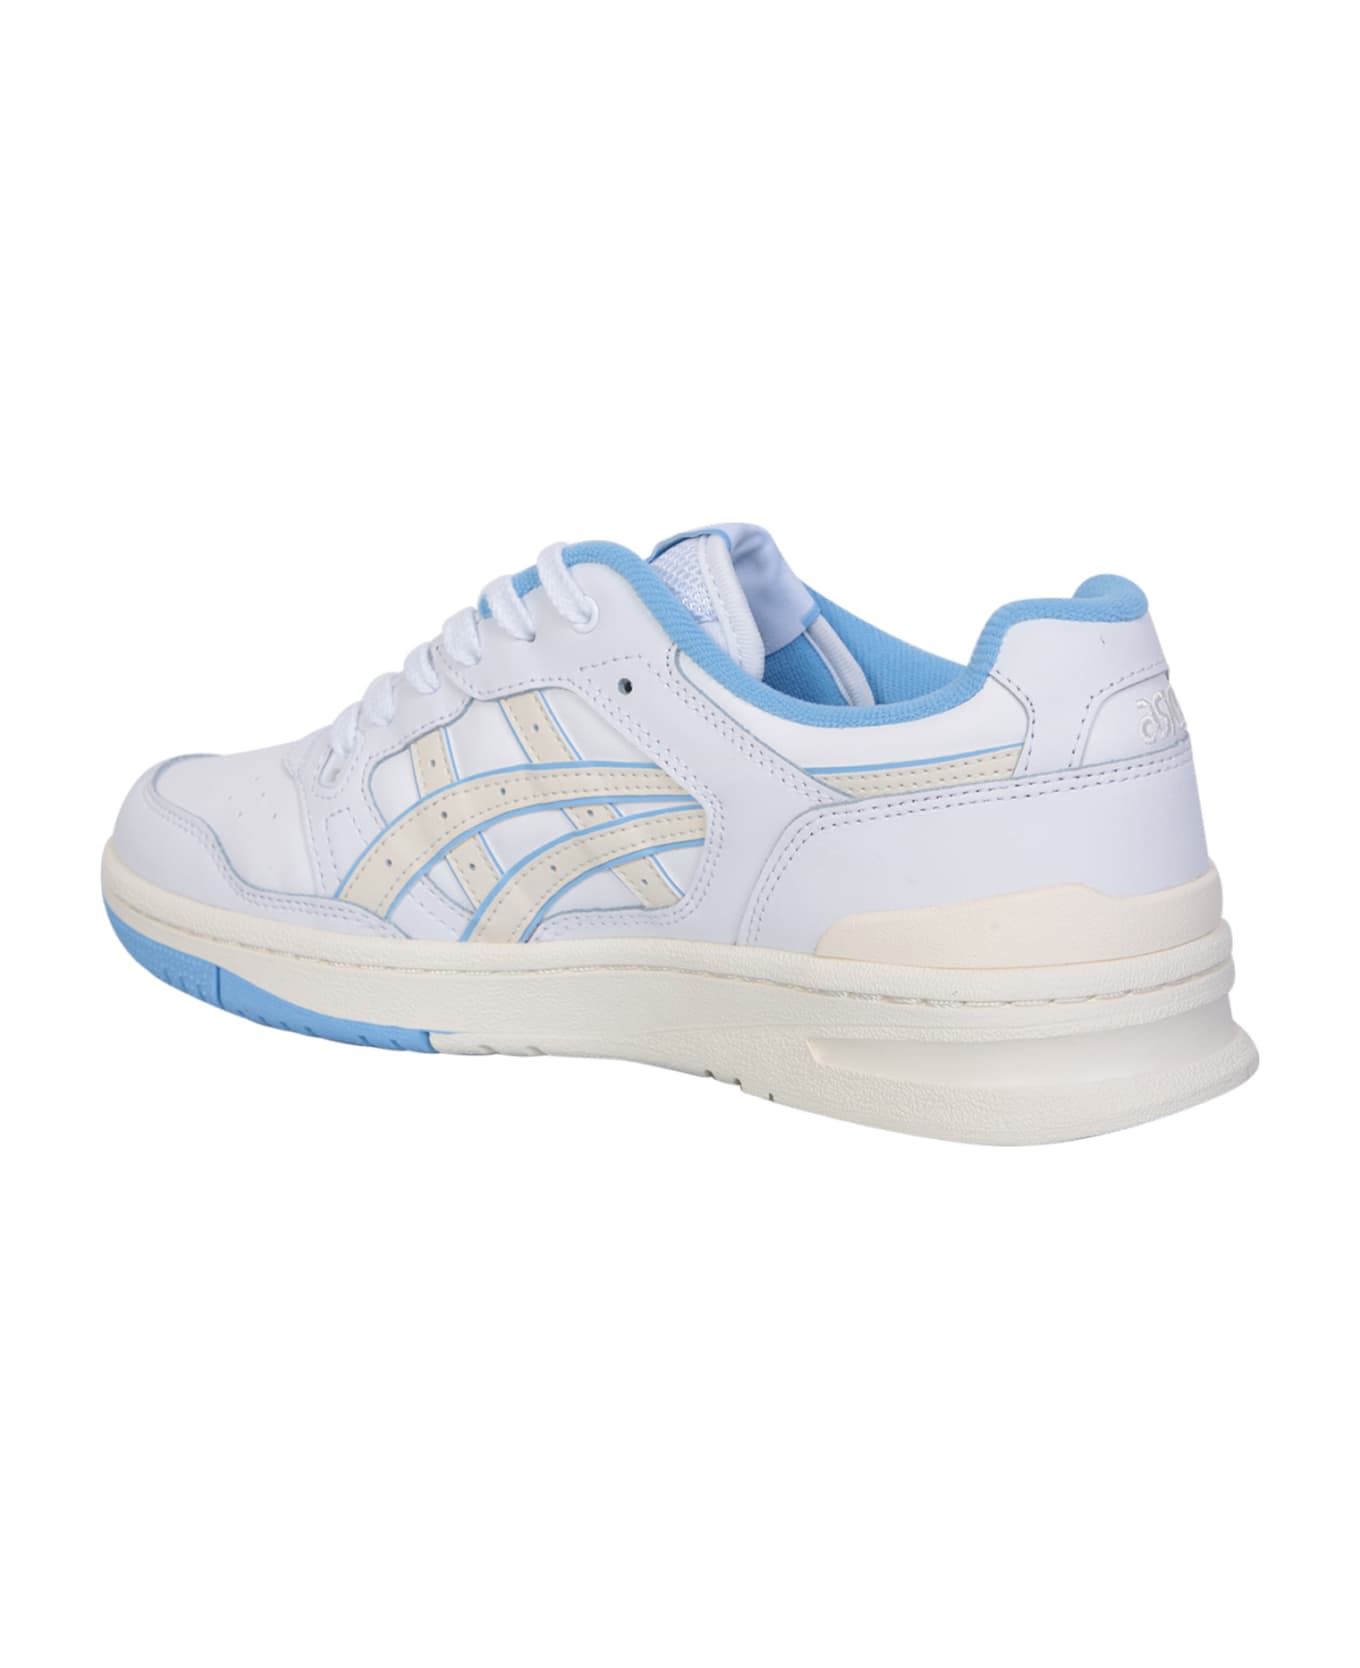 Asics White And Light Blue Ex89 Sneakers - White スニーカー